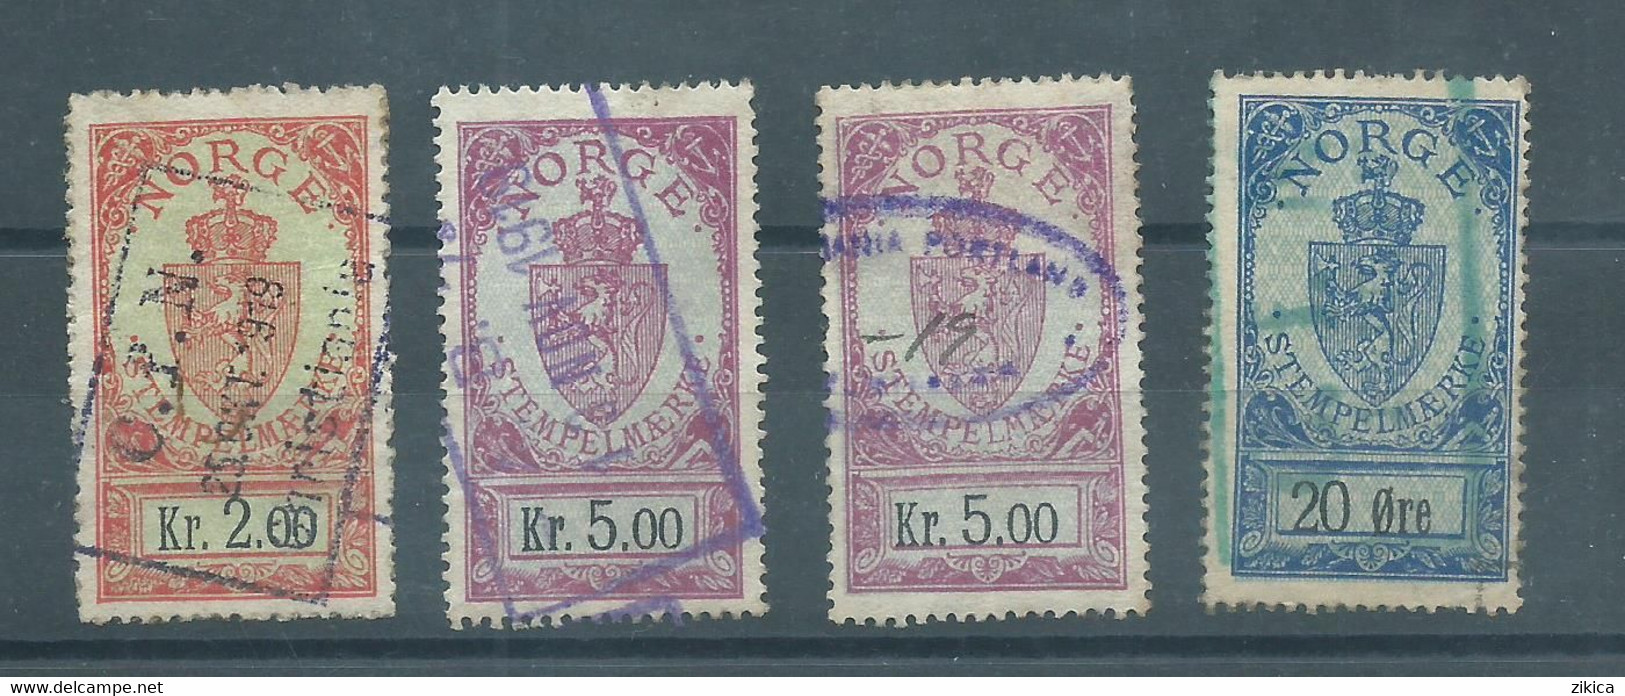 LOT 4 Stamps - NORWAY Norwegen Stempelmarke Documentary Stamps - Fiscale Zegels